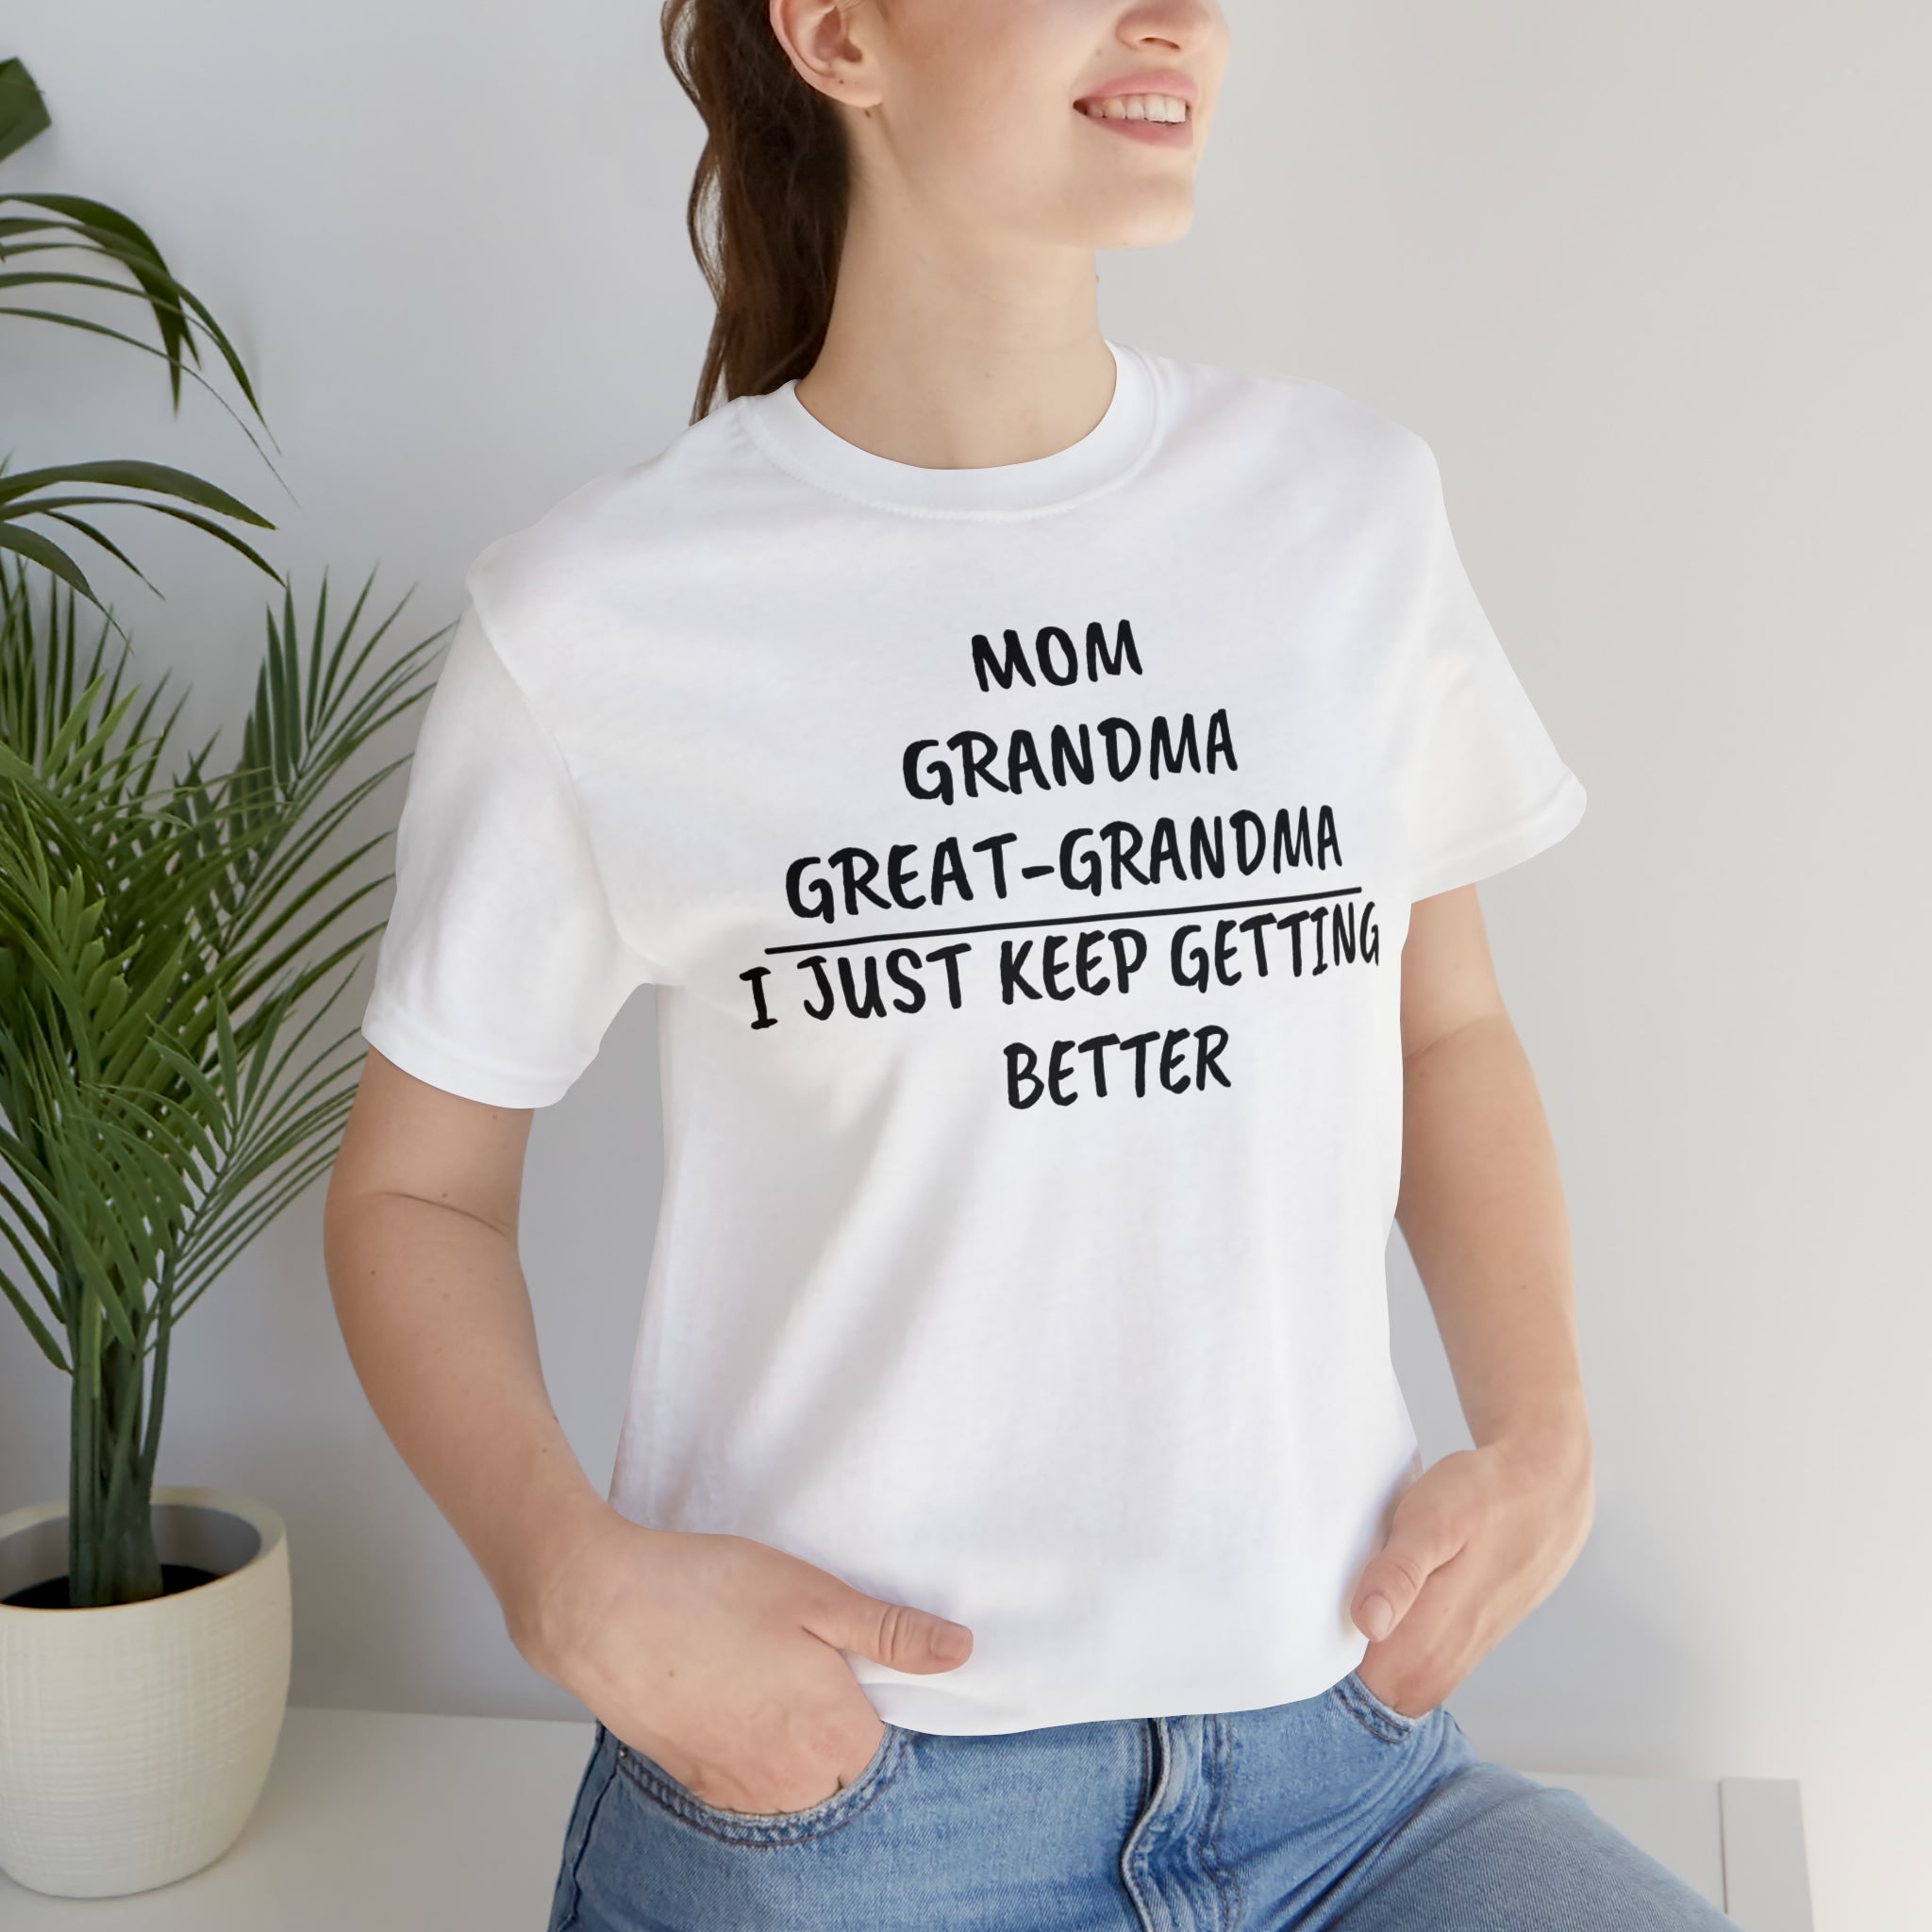 Mom, Grandma .... Shirt